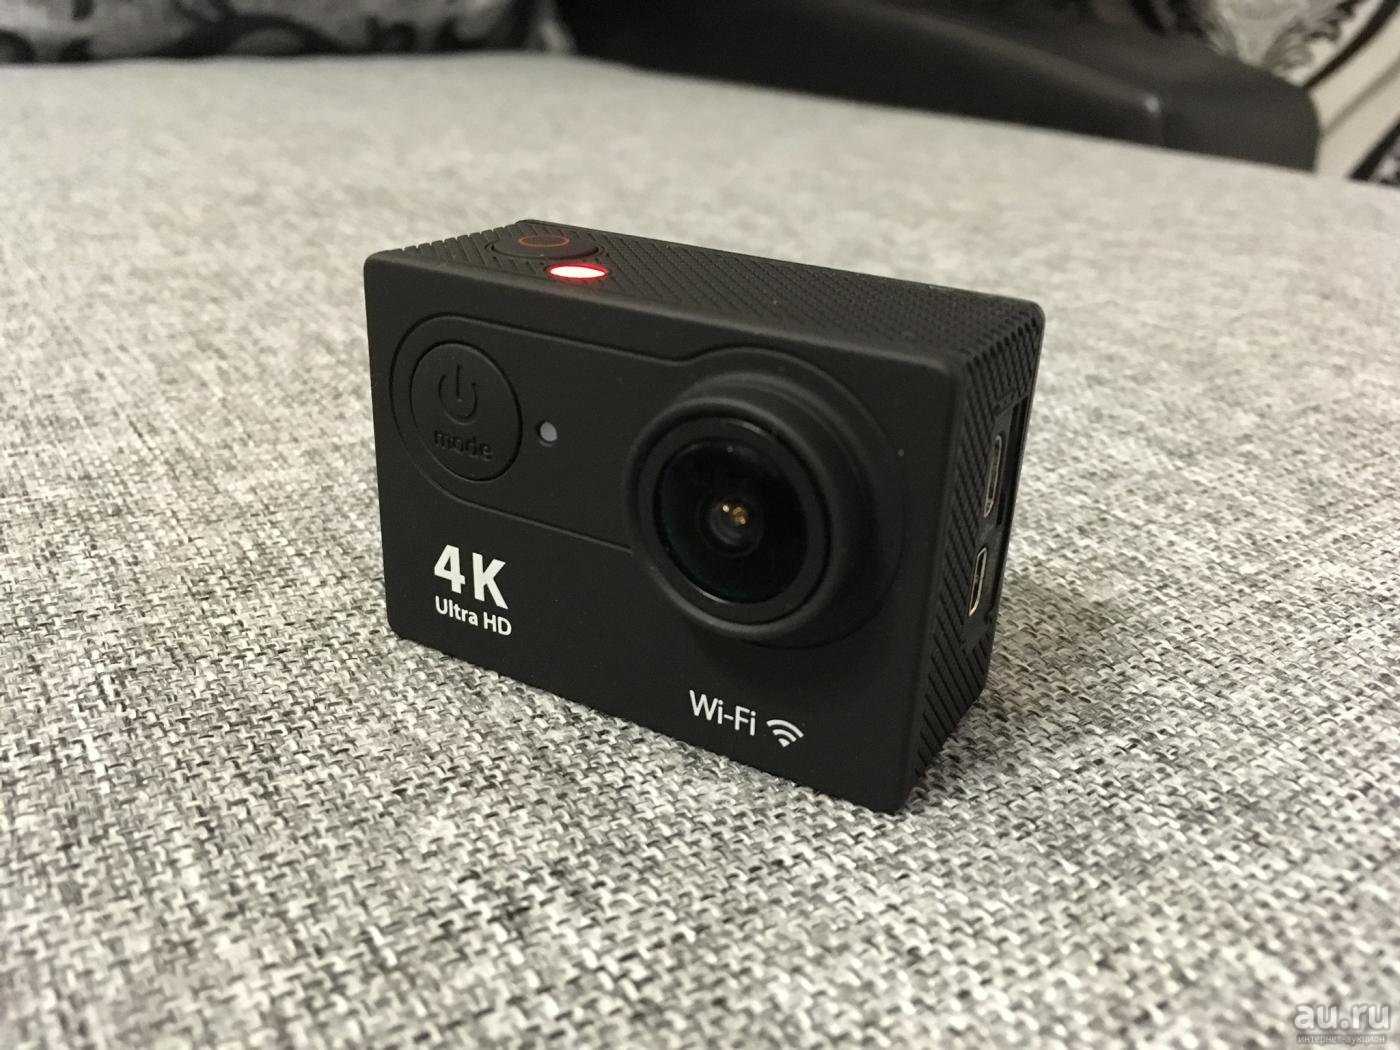 Лучшие экшн камеры с алиэкспресс - обзор action камер aliexpress